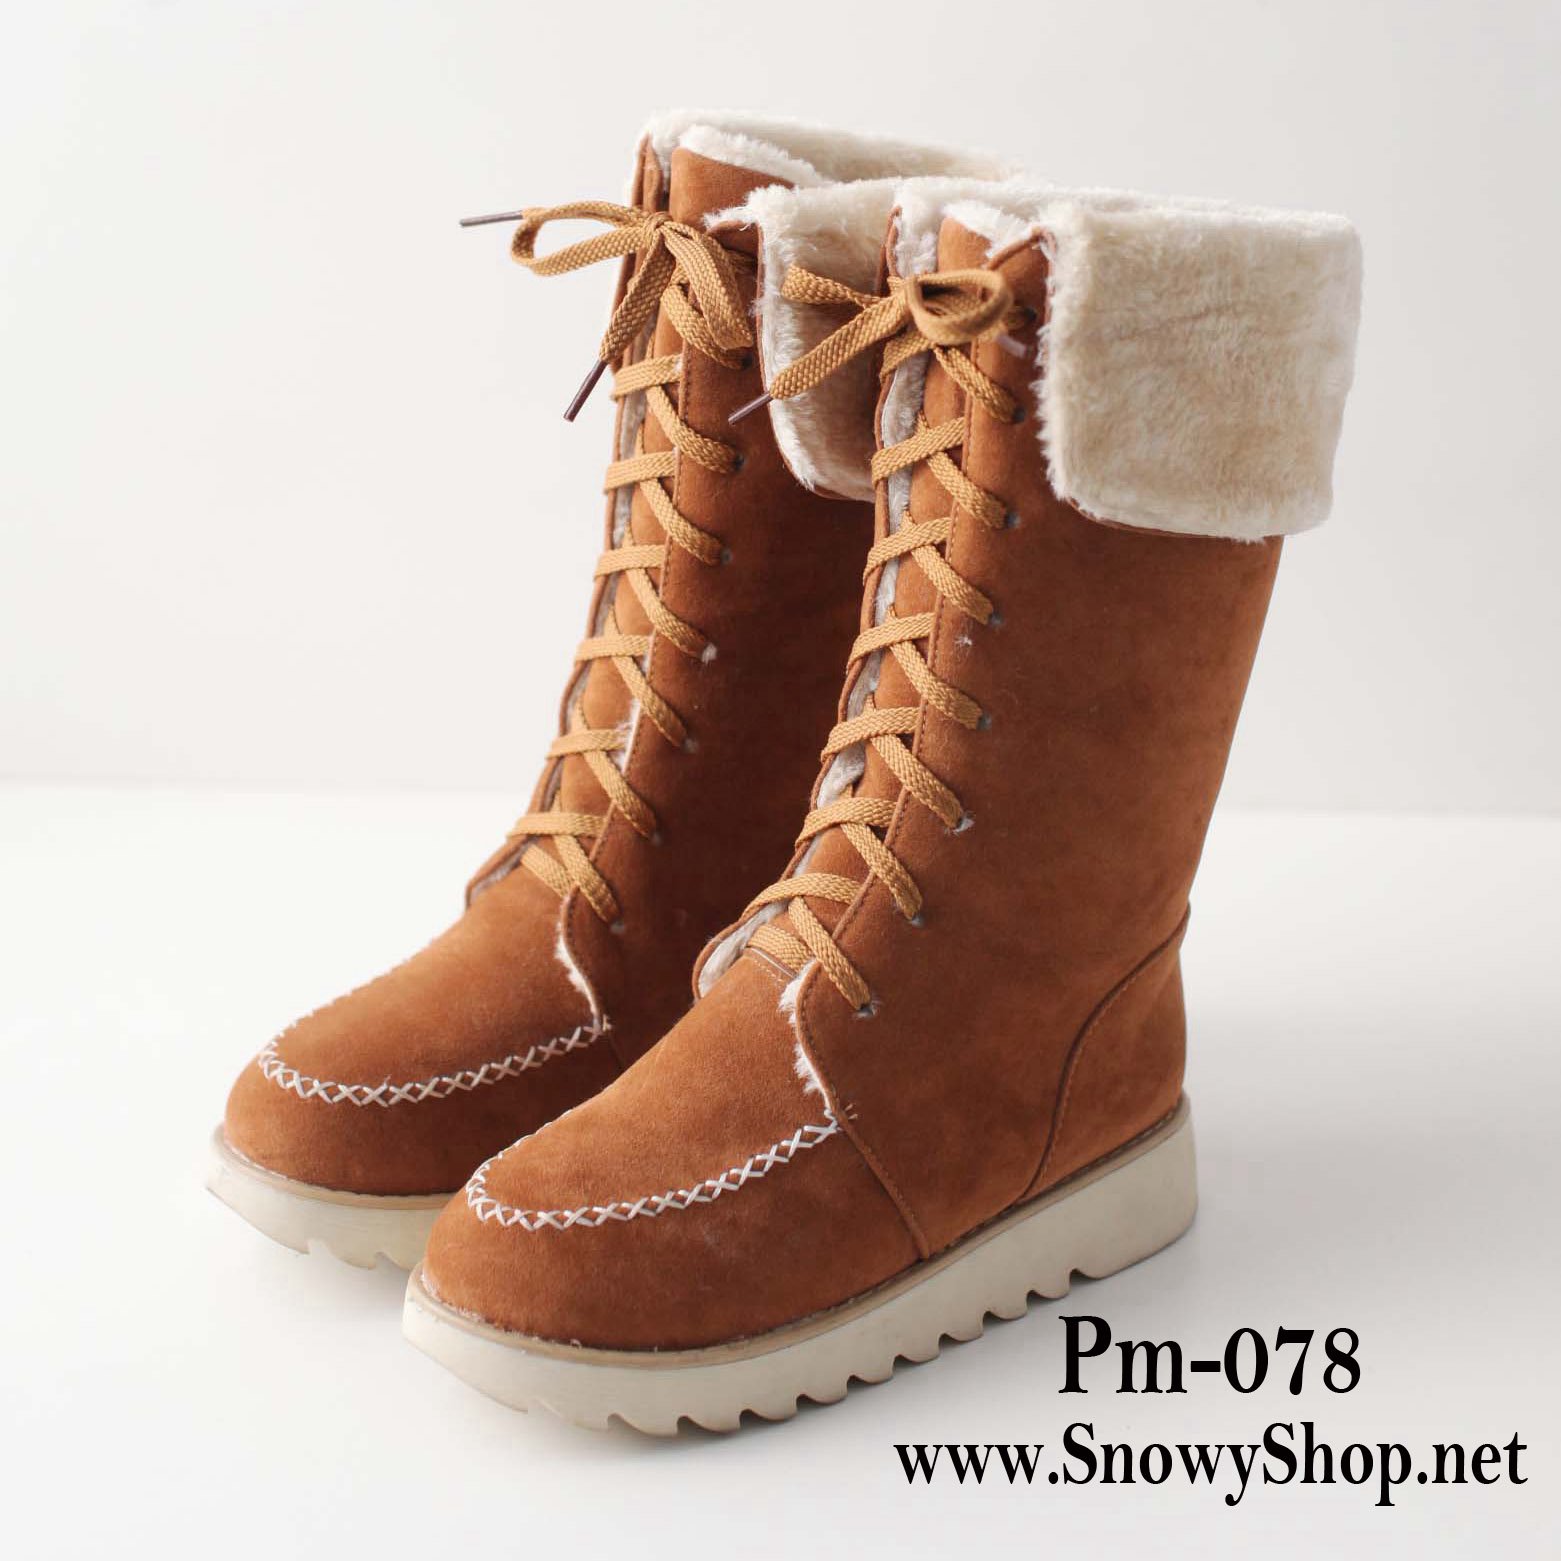  [[พร้อมส่ง 36,37,38,39]] [Boots] [Pm-078] Pangmama รองเท้าบู๊ทสีน้ำตาลกำมะหยี่ ซับขนสีครีมกันหนาวได้อุ่นลุยหิมะได้เลยค่ะ